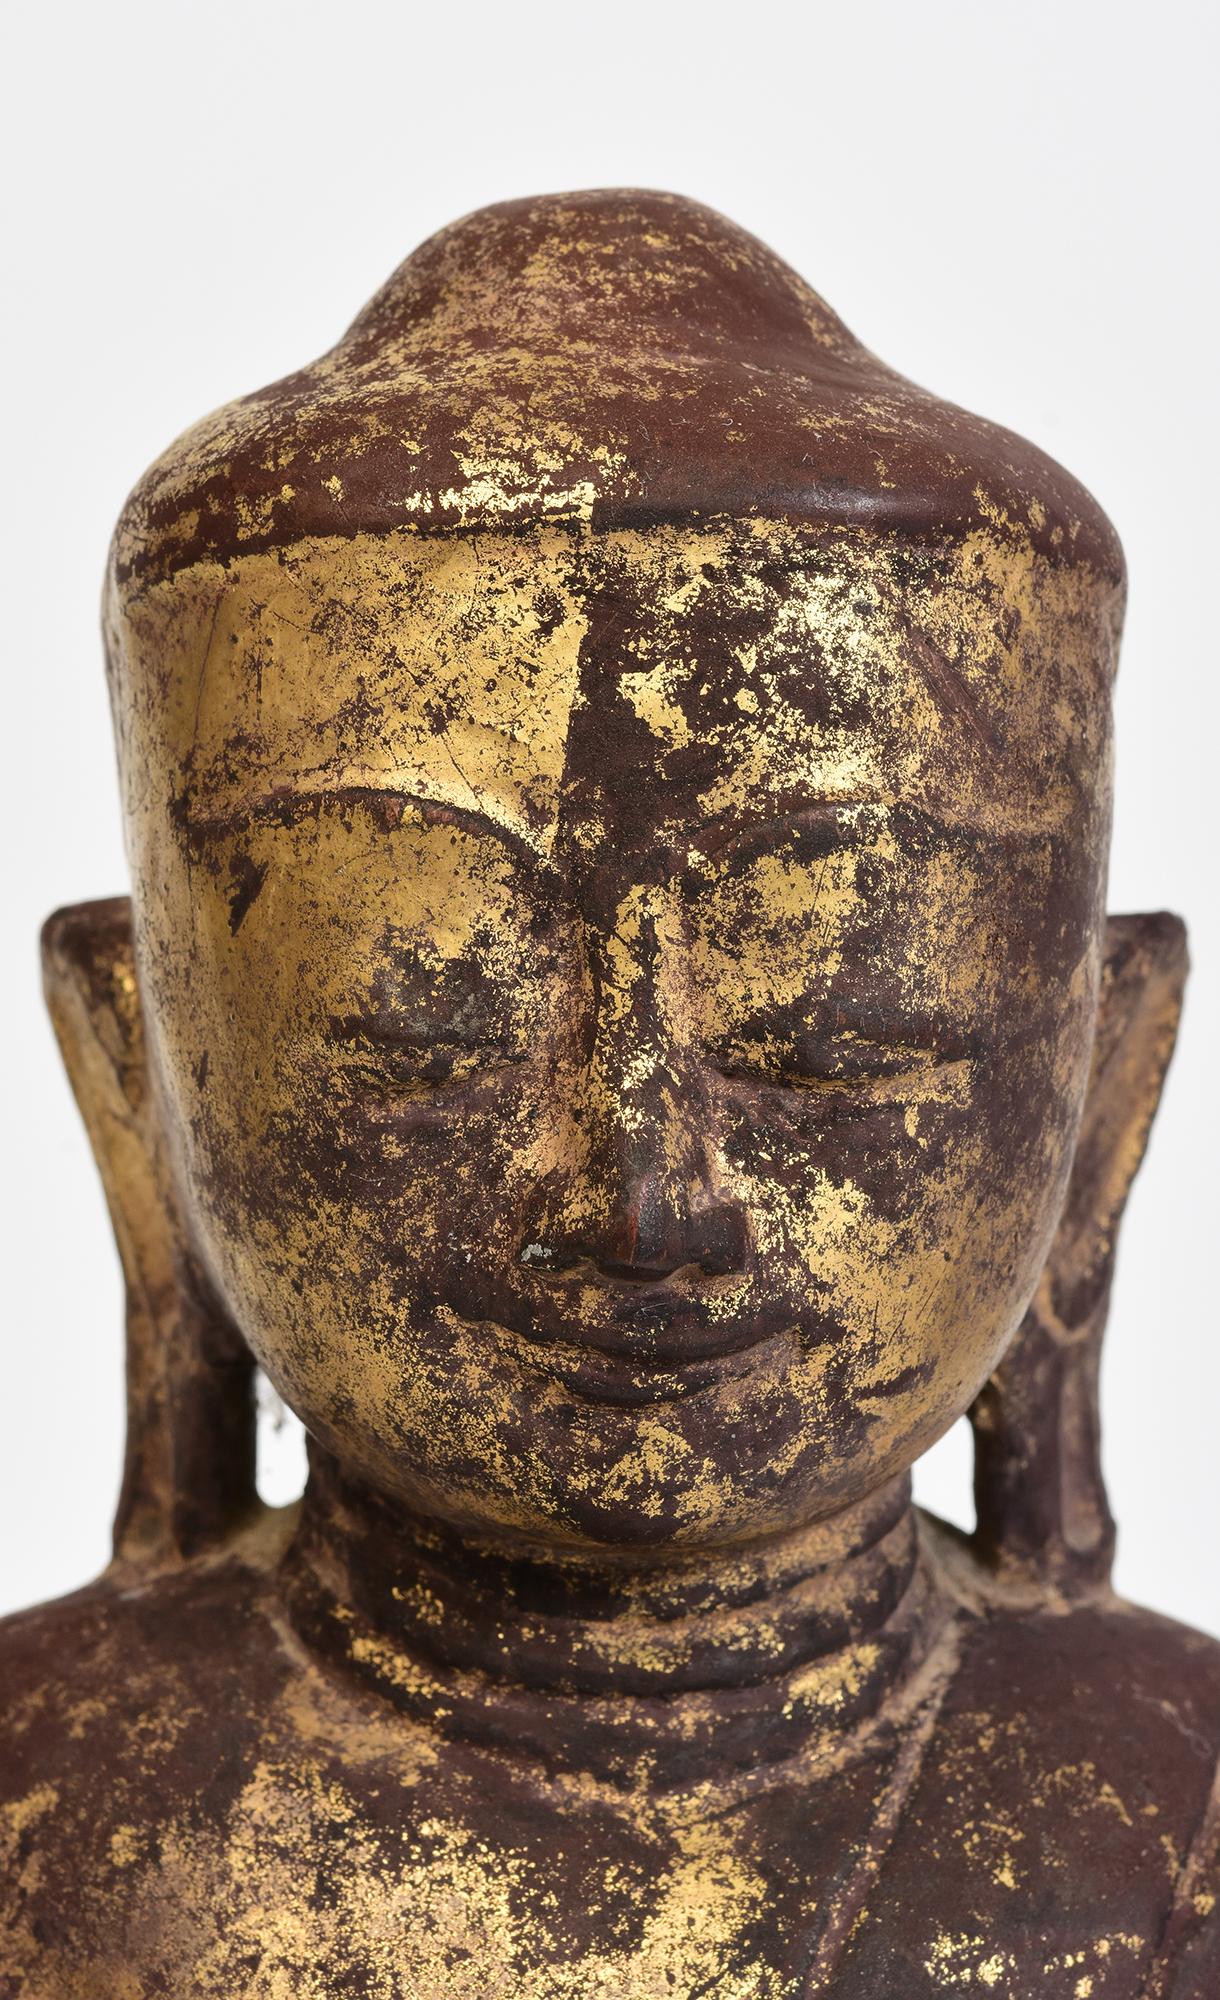 Antiker burmesischer Lotus-Buddha aus Holz, sitzend in der Mara-Vijaya-Haltung (die Erde zum Zeugen rufen) auf einem Sockel.

Alter: Birma, Shan-Zeit, 17. Jahrhundert
Größe: Höhe 33 C.M. / Breite 19 C.M.
Zustand: Insgesamt guter Zustand (einige